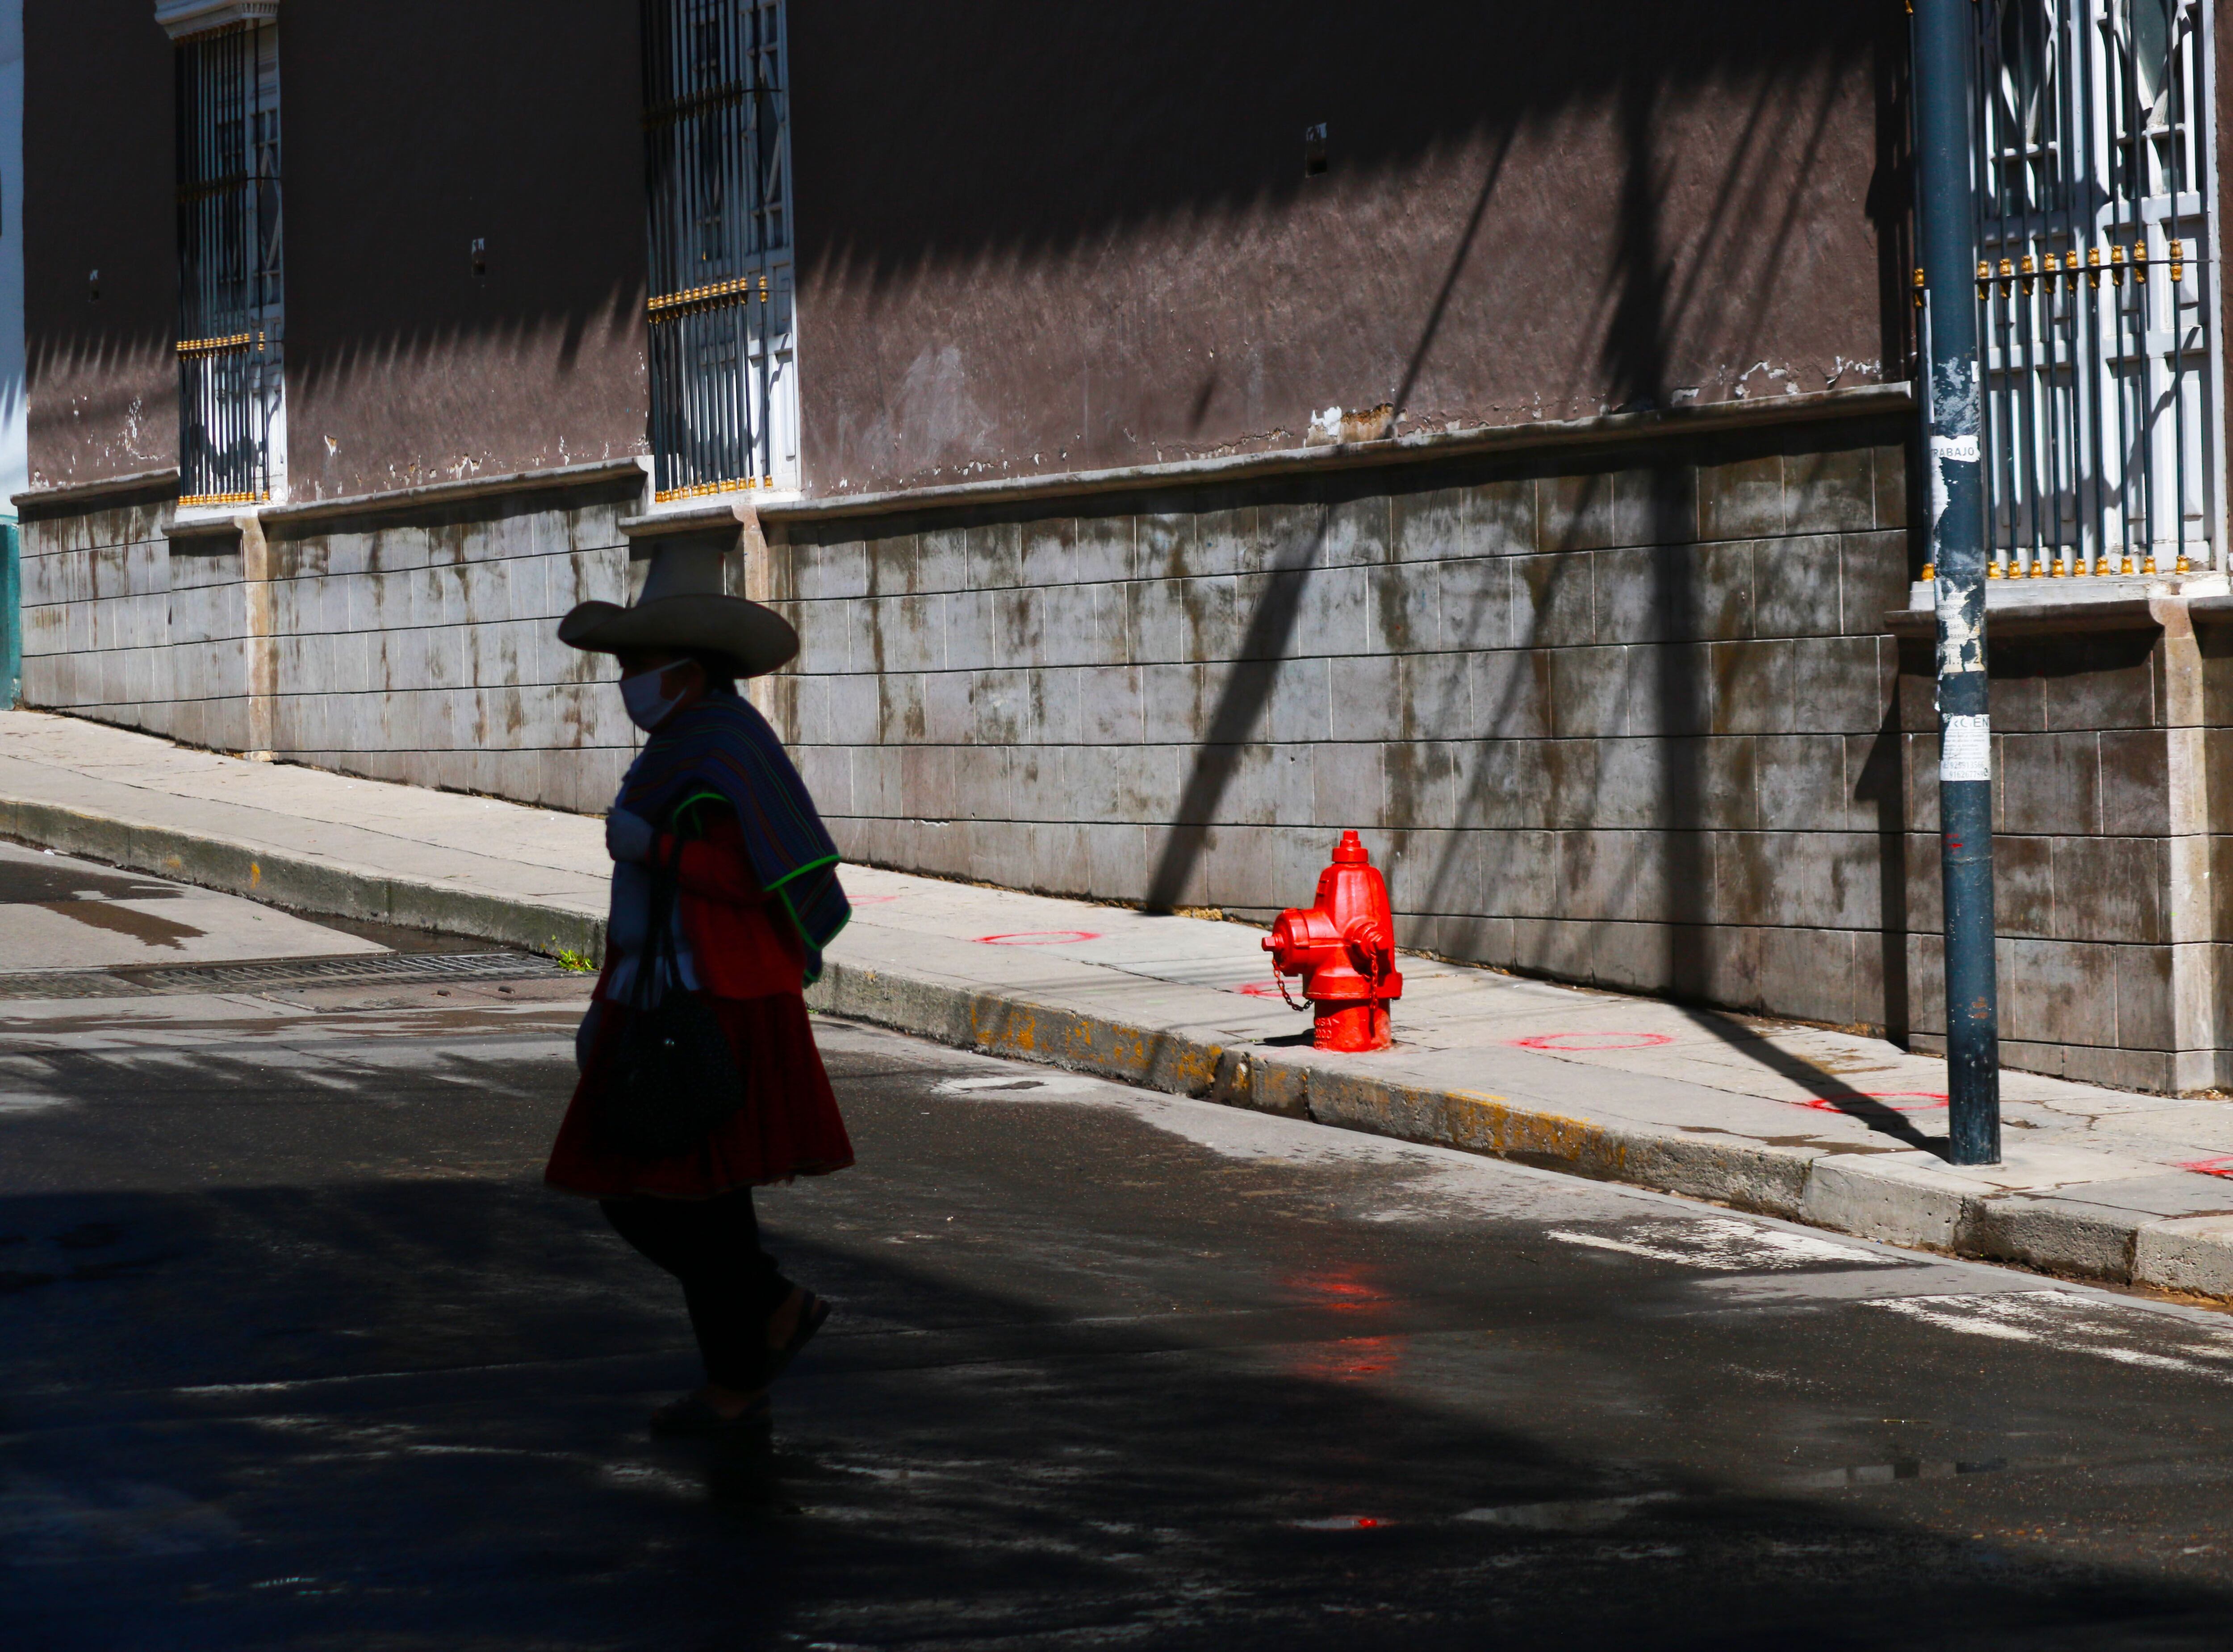 Una mujer recorre las calles del centro histórico de Cajamarca. (Foto: José Luis Chávez)